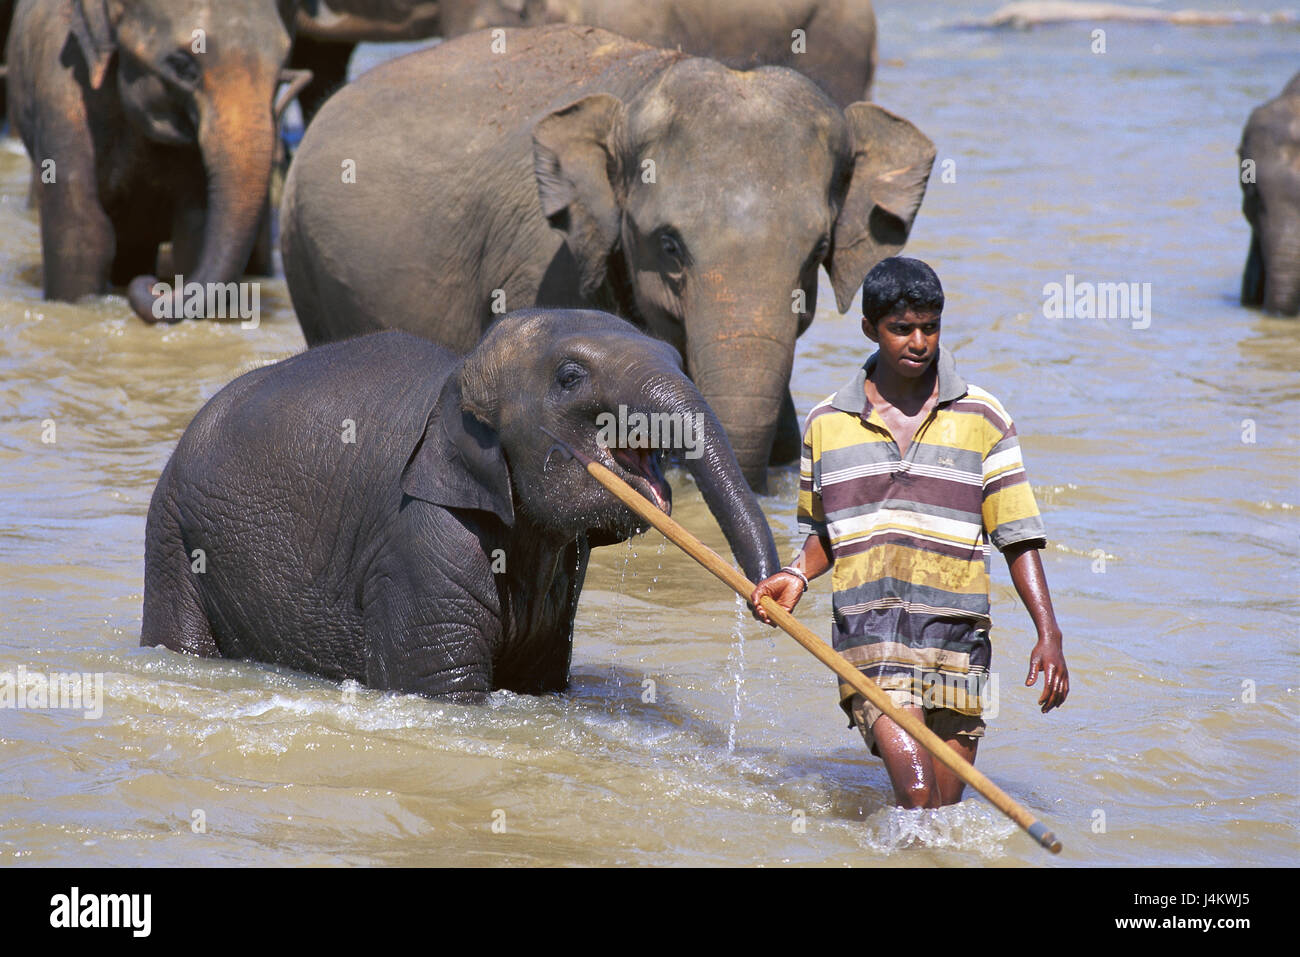 Le Sri Lanka, l'orphelinat d'éléphants, Pinawela, rivière, l'homme, l'éléphant, l'éléphant baignoire modèle ne libération Asie du Sud, l'île de l'état, de l'eau, flux Peril, l'homme, locales, entraîneur des animaux, physio, gestionnaire de l'éléphant, les animaux, les maisons de Dick, Elephas maximus du Bengali, de l'eau sis, rafraîchissements, refroidissement, 'orphelinat des éléphants", point d'intérêt, d'attirance, attraction touristique Banque D'Images